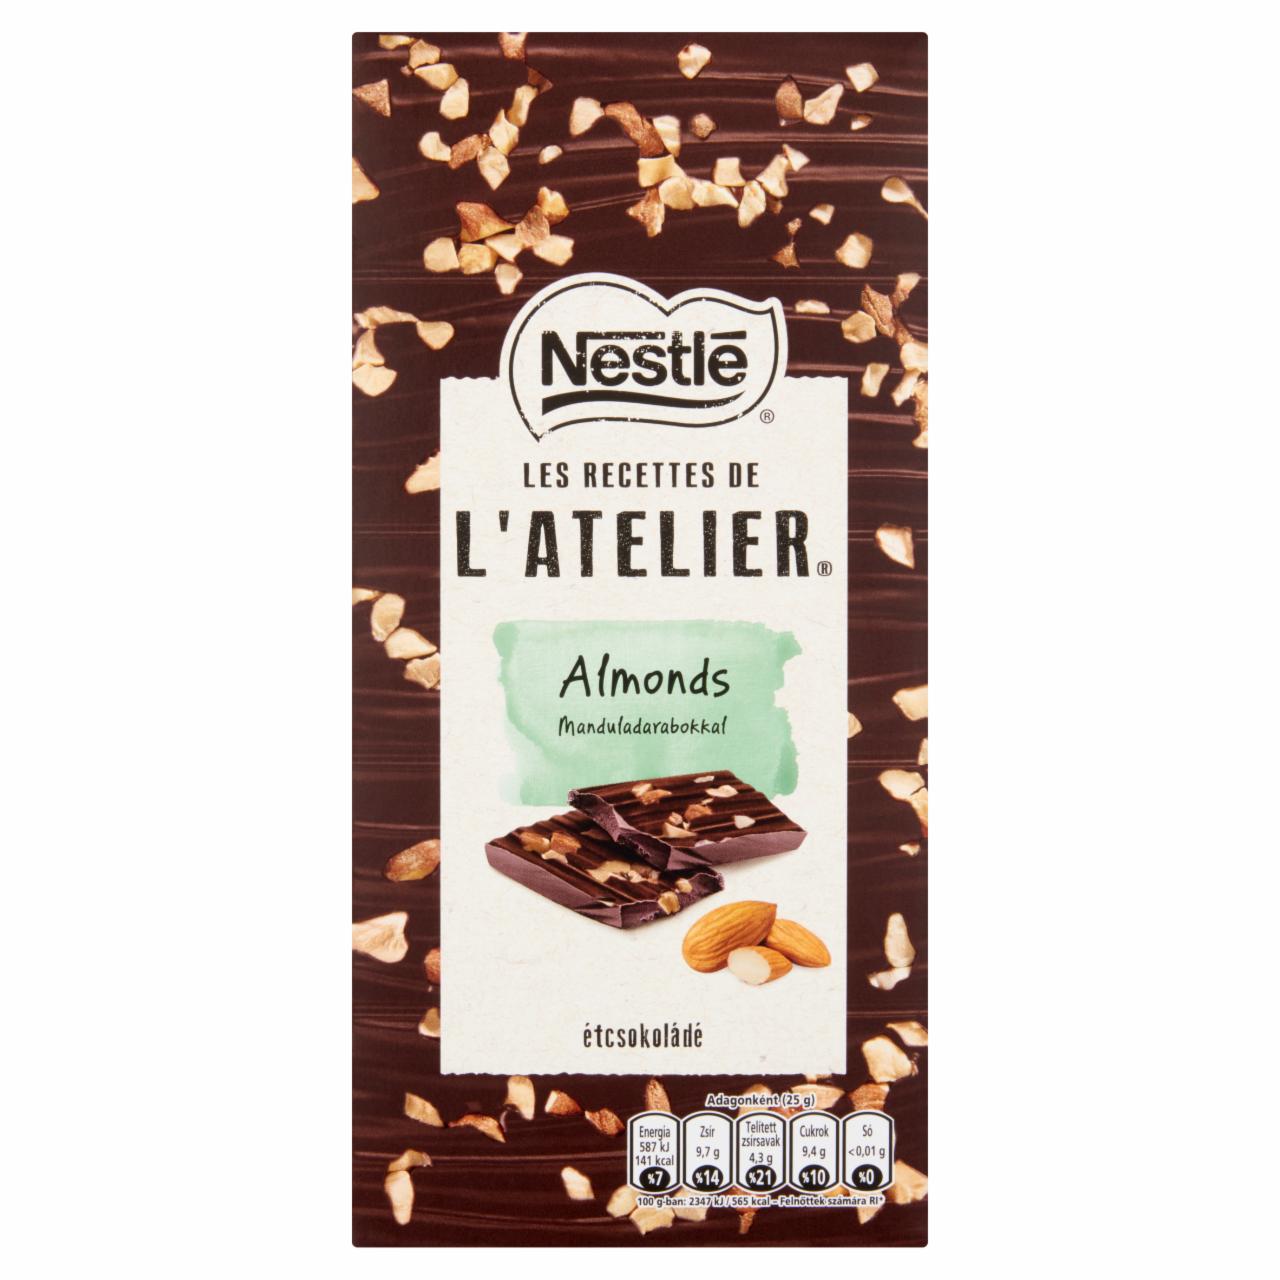 Képek - Nestlé l'Atelier étcsokoládé manduladarabokkal 115 g